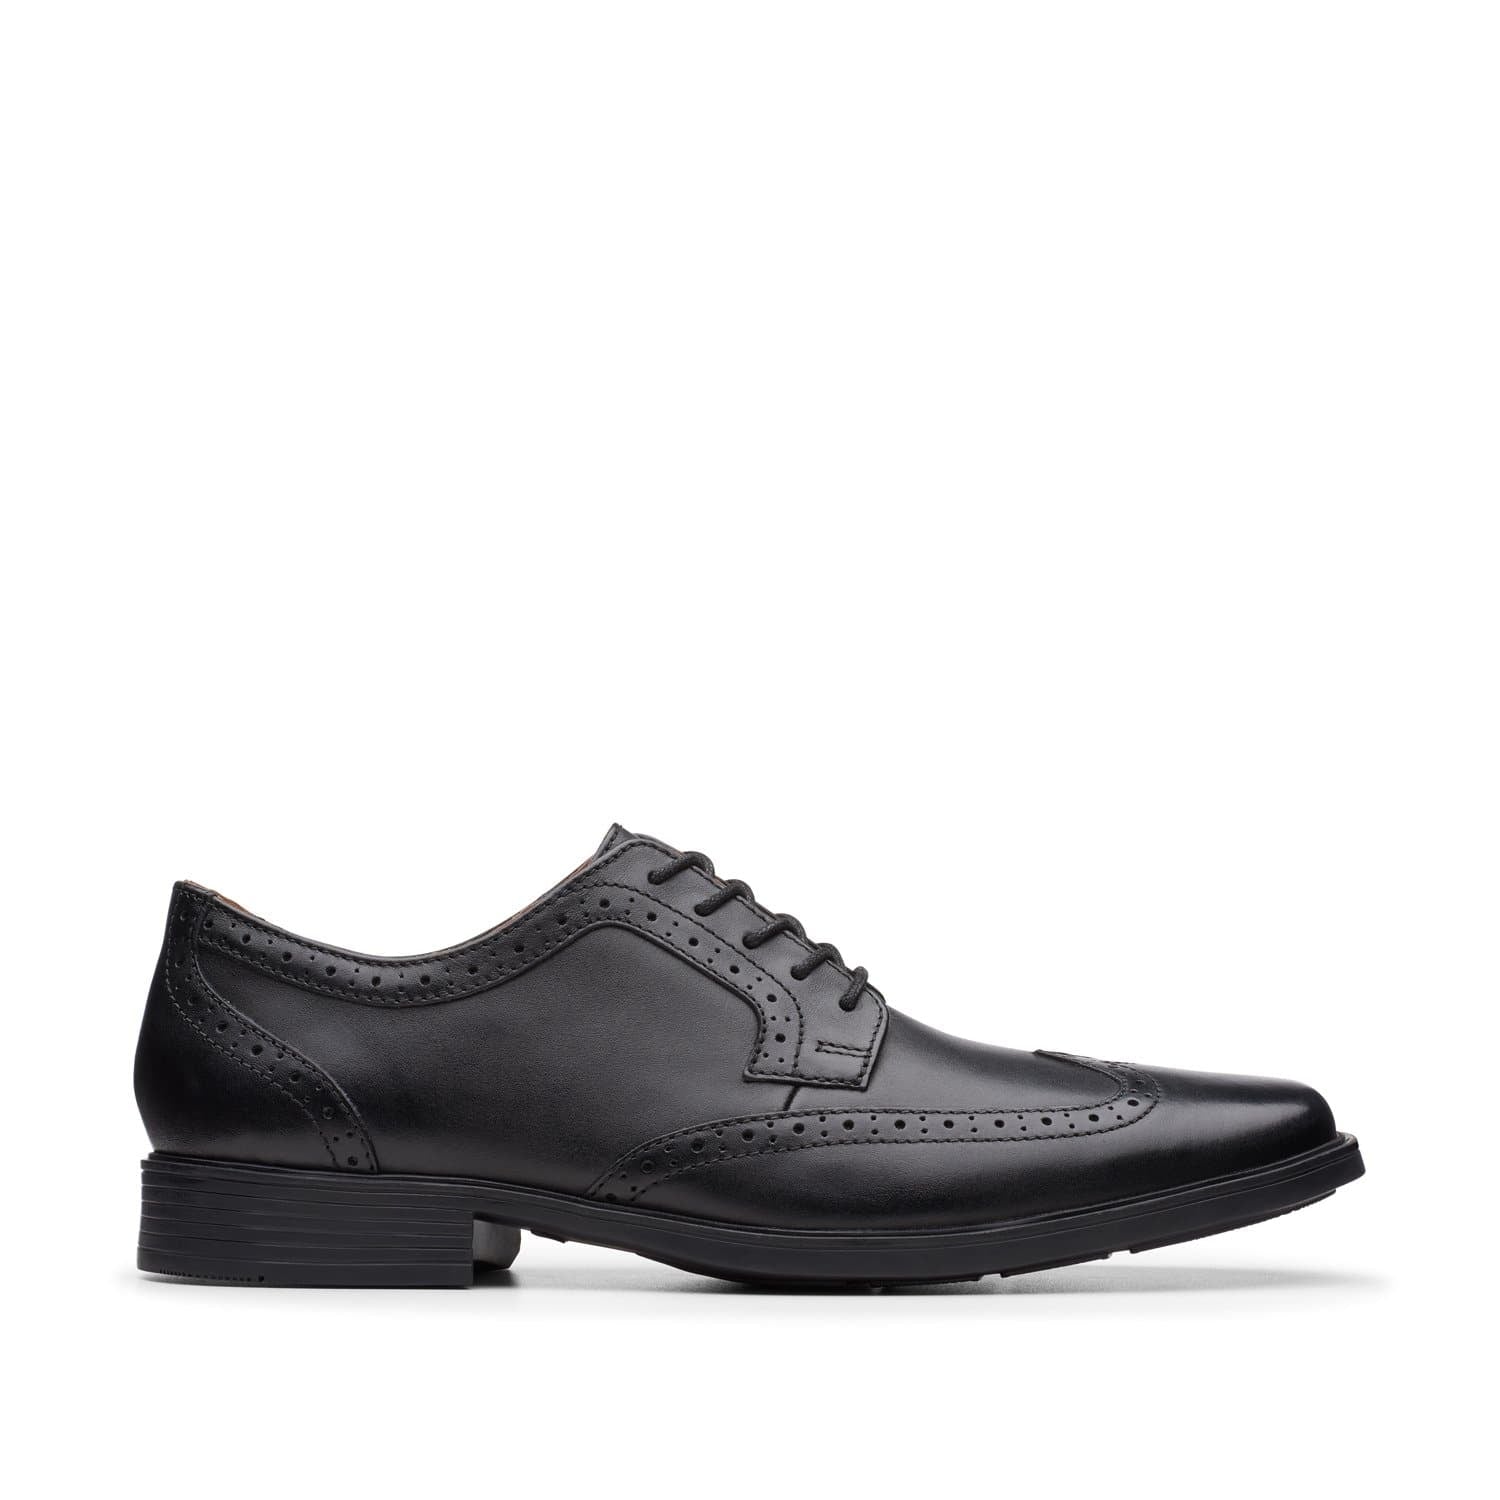 Clarks-Tilden-Wing-Men's-Shoes-Black-Leather-26146219